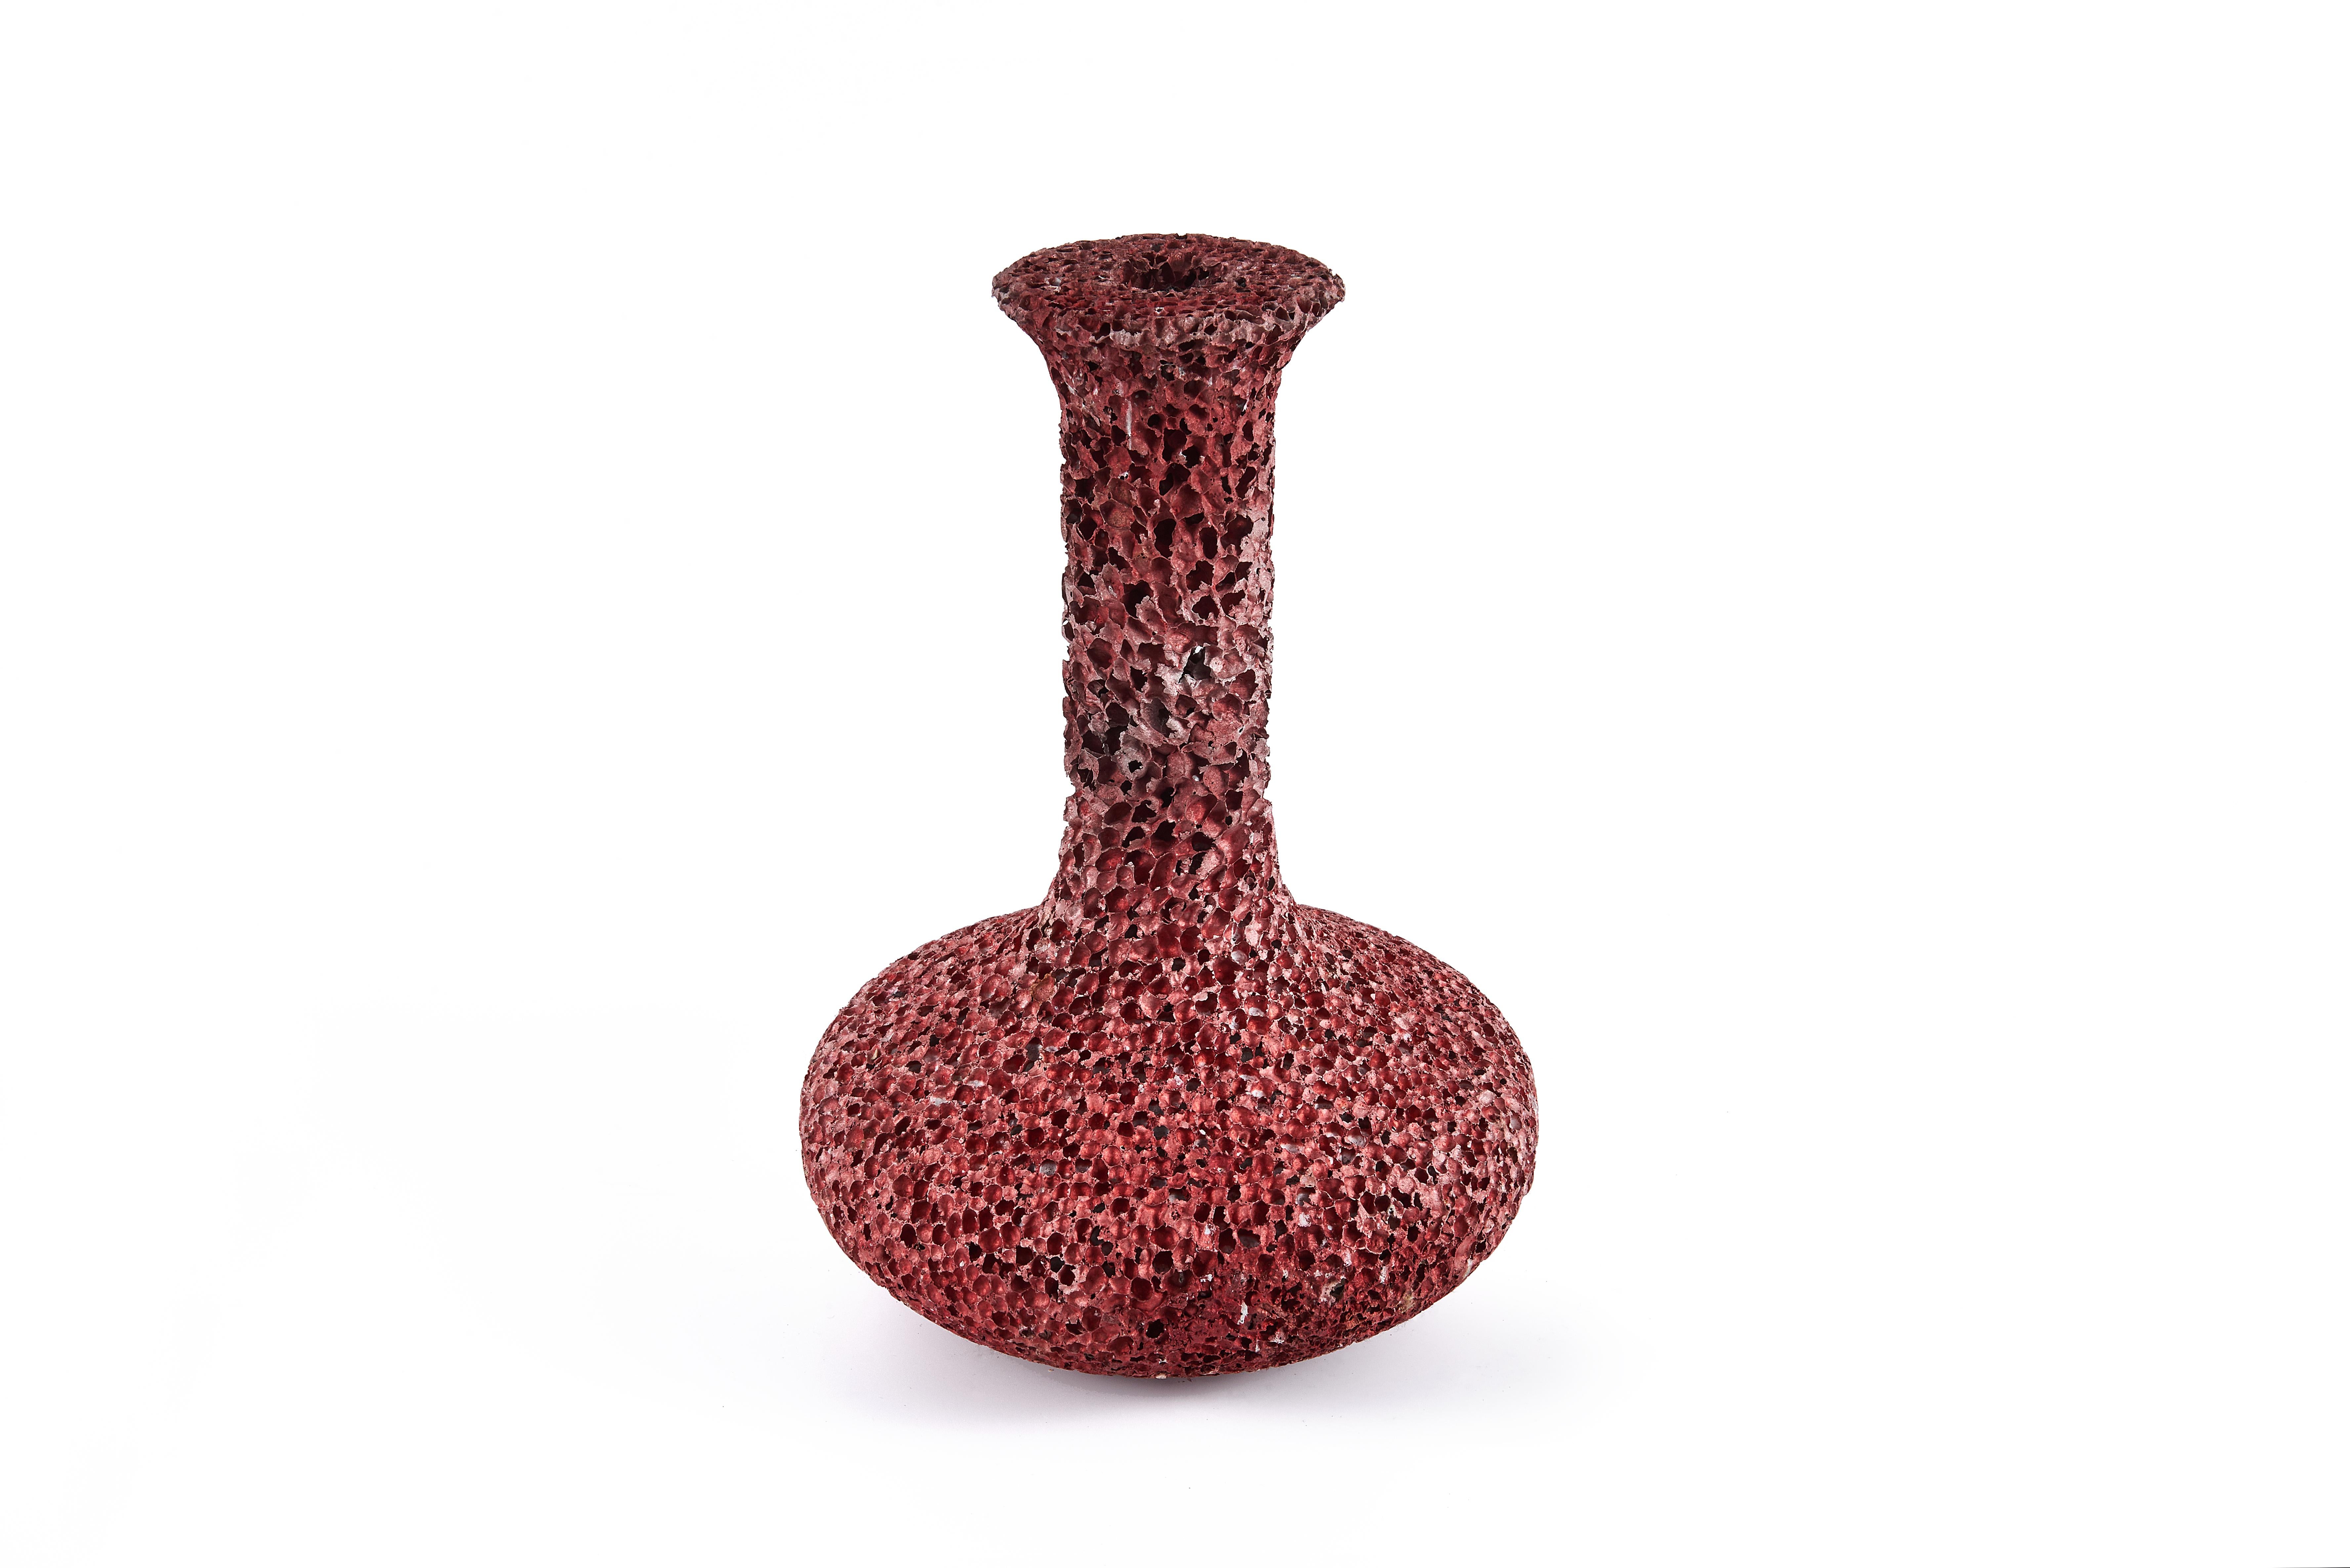 Als neue Phase seiner Erkundung des Mediums Aluminiumschaum hat Michael Young für die Galerie ALL eine neue Serie von Vasen geschaffen. Die Dynasty-Serie wird ihr weltweites Debüt auf der fünften Ausgabe der Design Shanghai vom 14. bis 17. März 2018